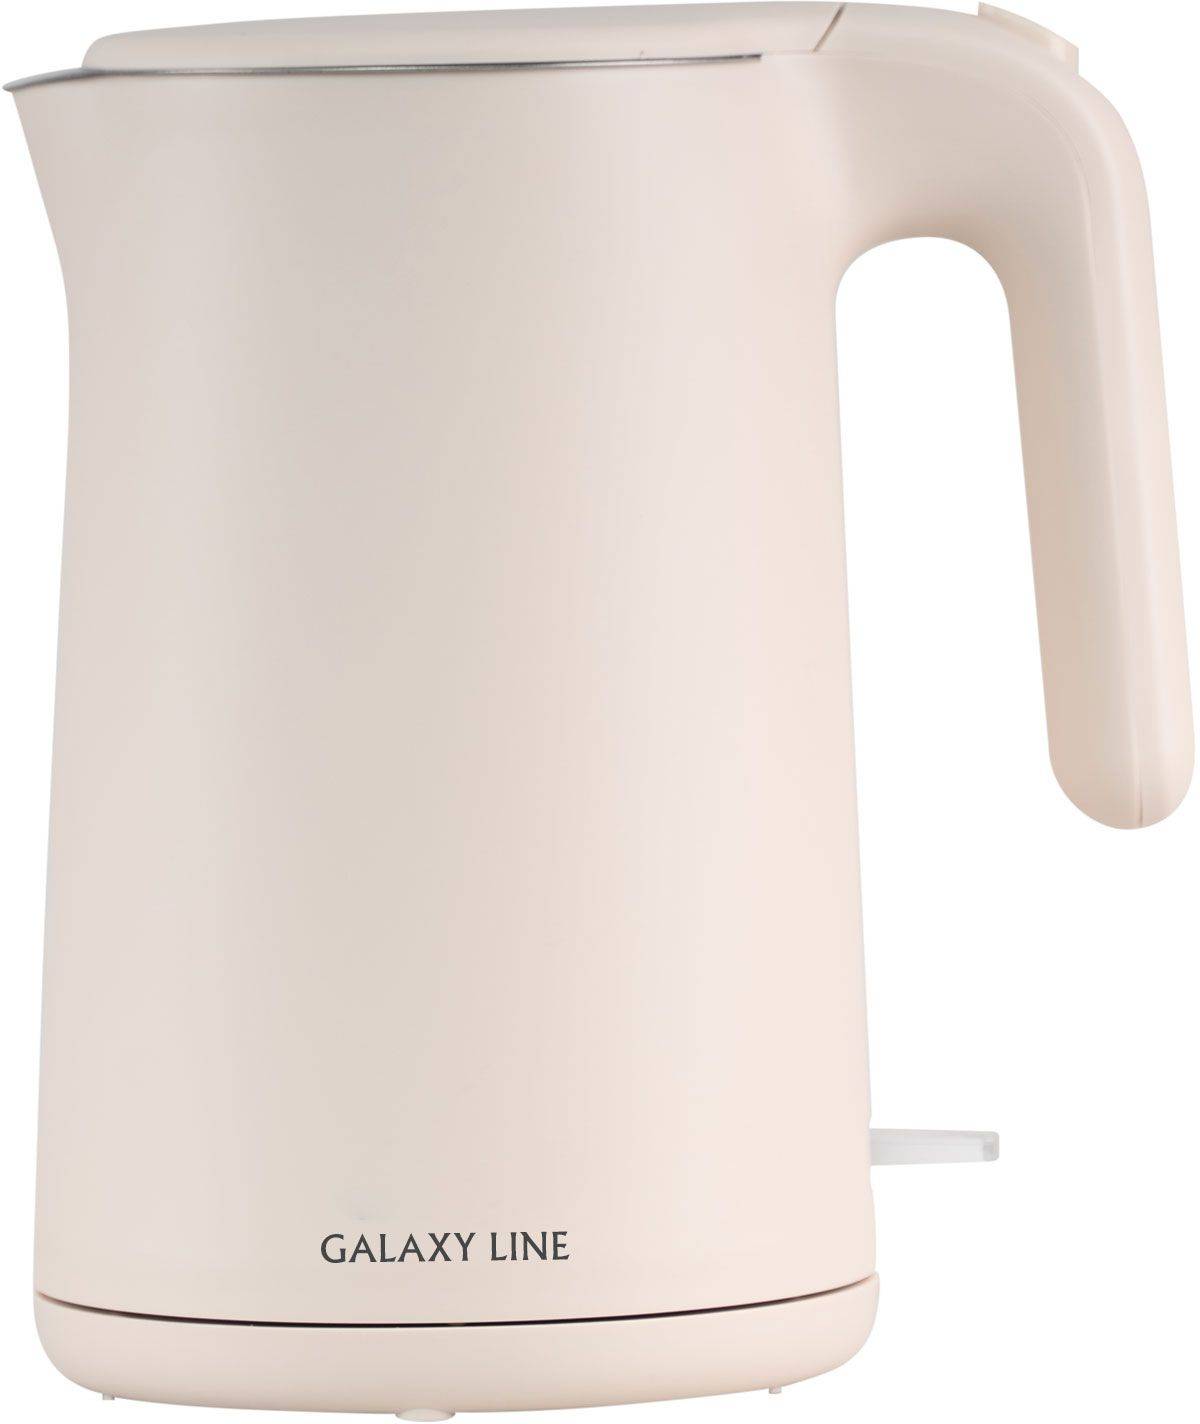 Чайник электрический Galaxy Line GL 0327 пудровый, нержавеющая сталь (ГЛ0327ЛП)